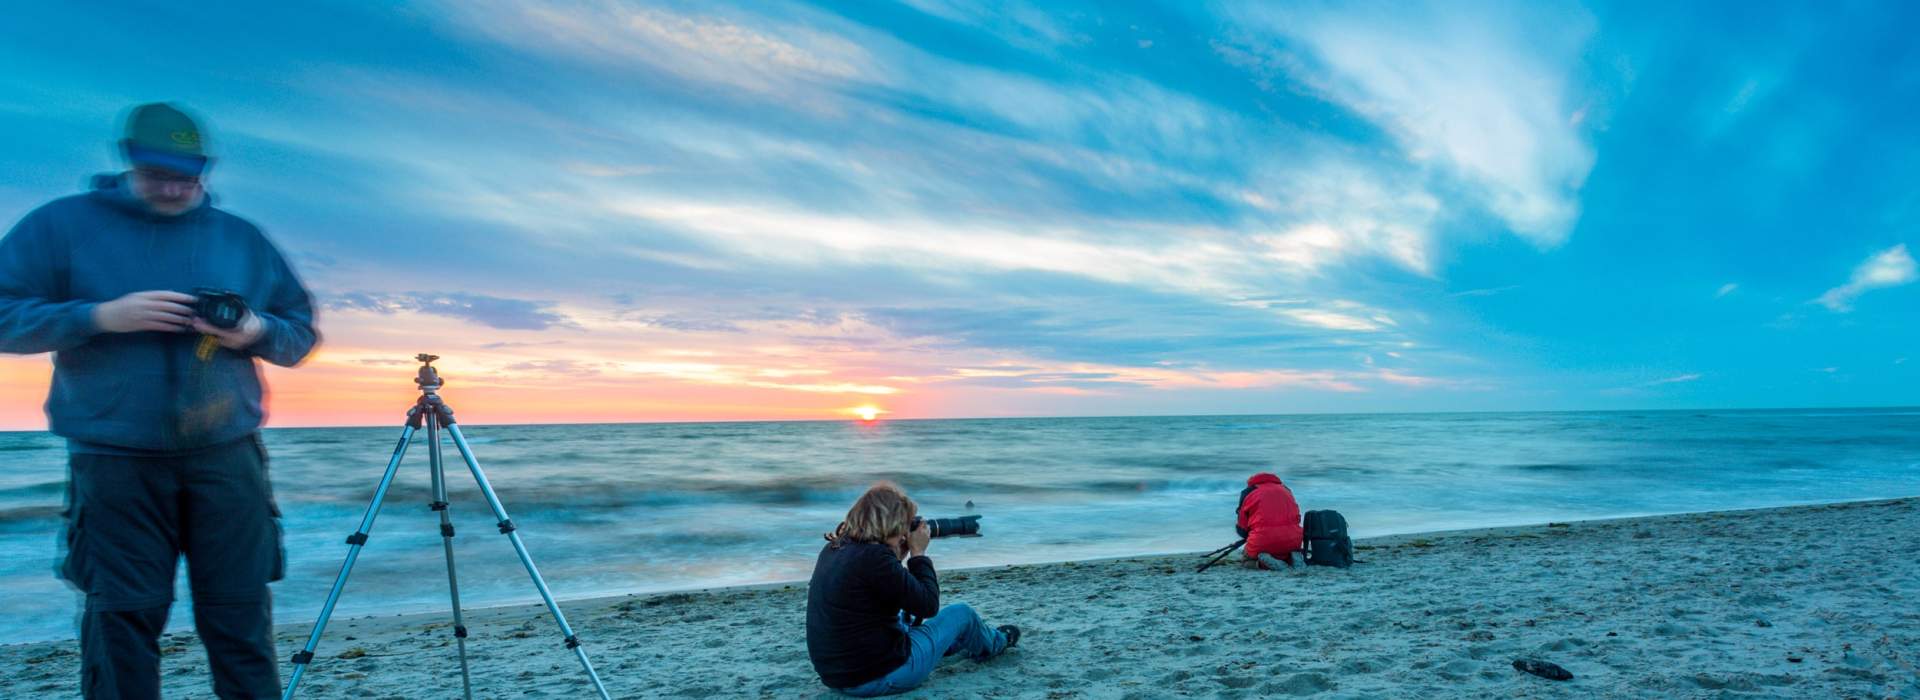 Fotoschule – Fotokurse an der Ostseeküste